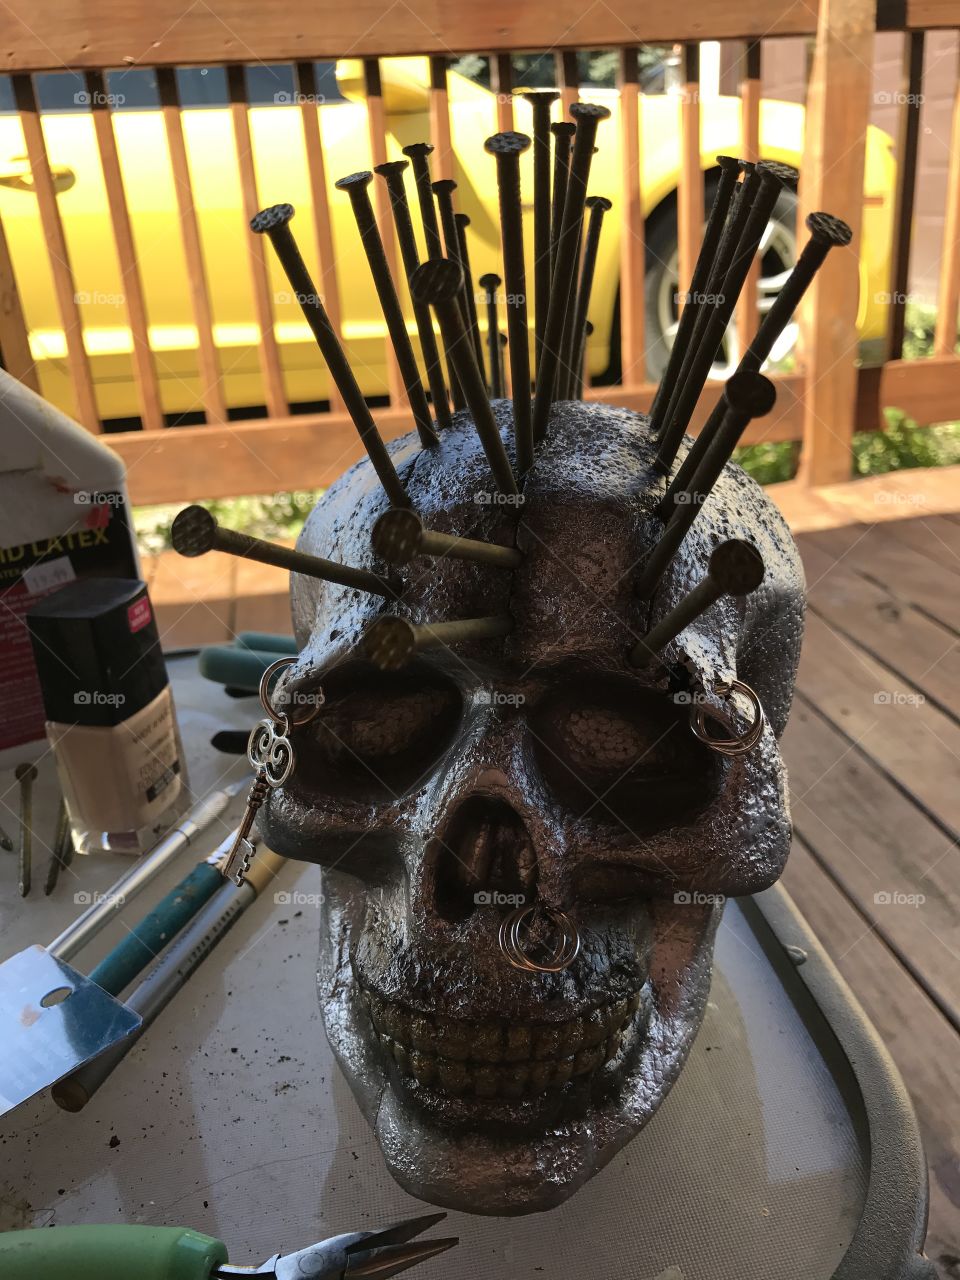 Skull I'm making bgcromwell1 